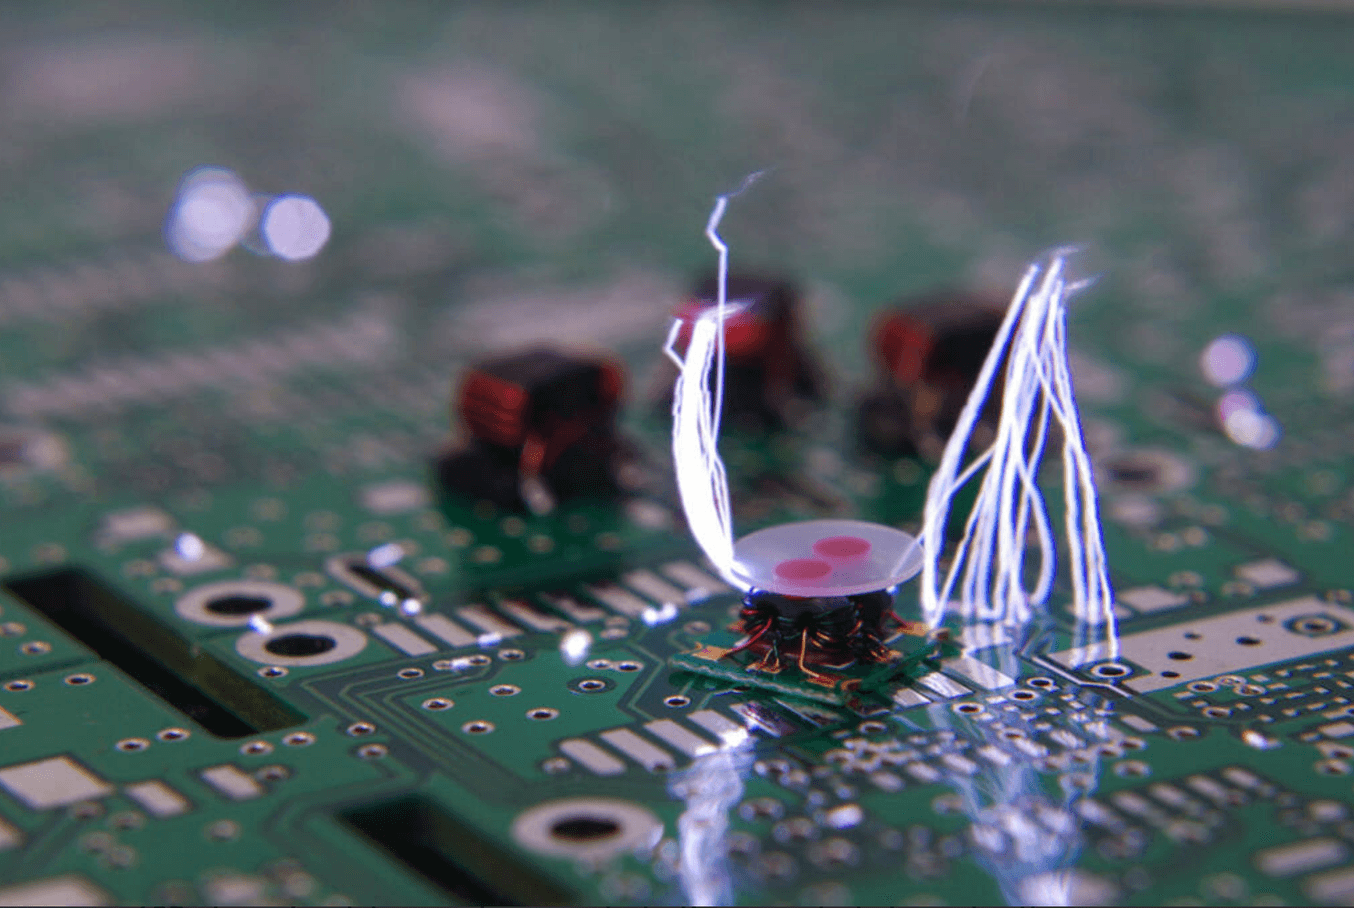 Scosse statiche che distruggono un circuito stampato.